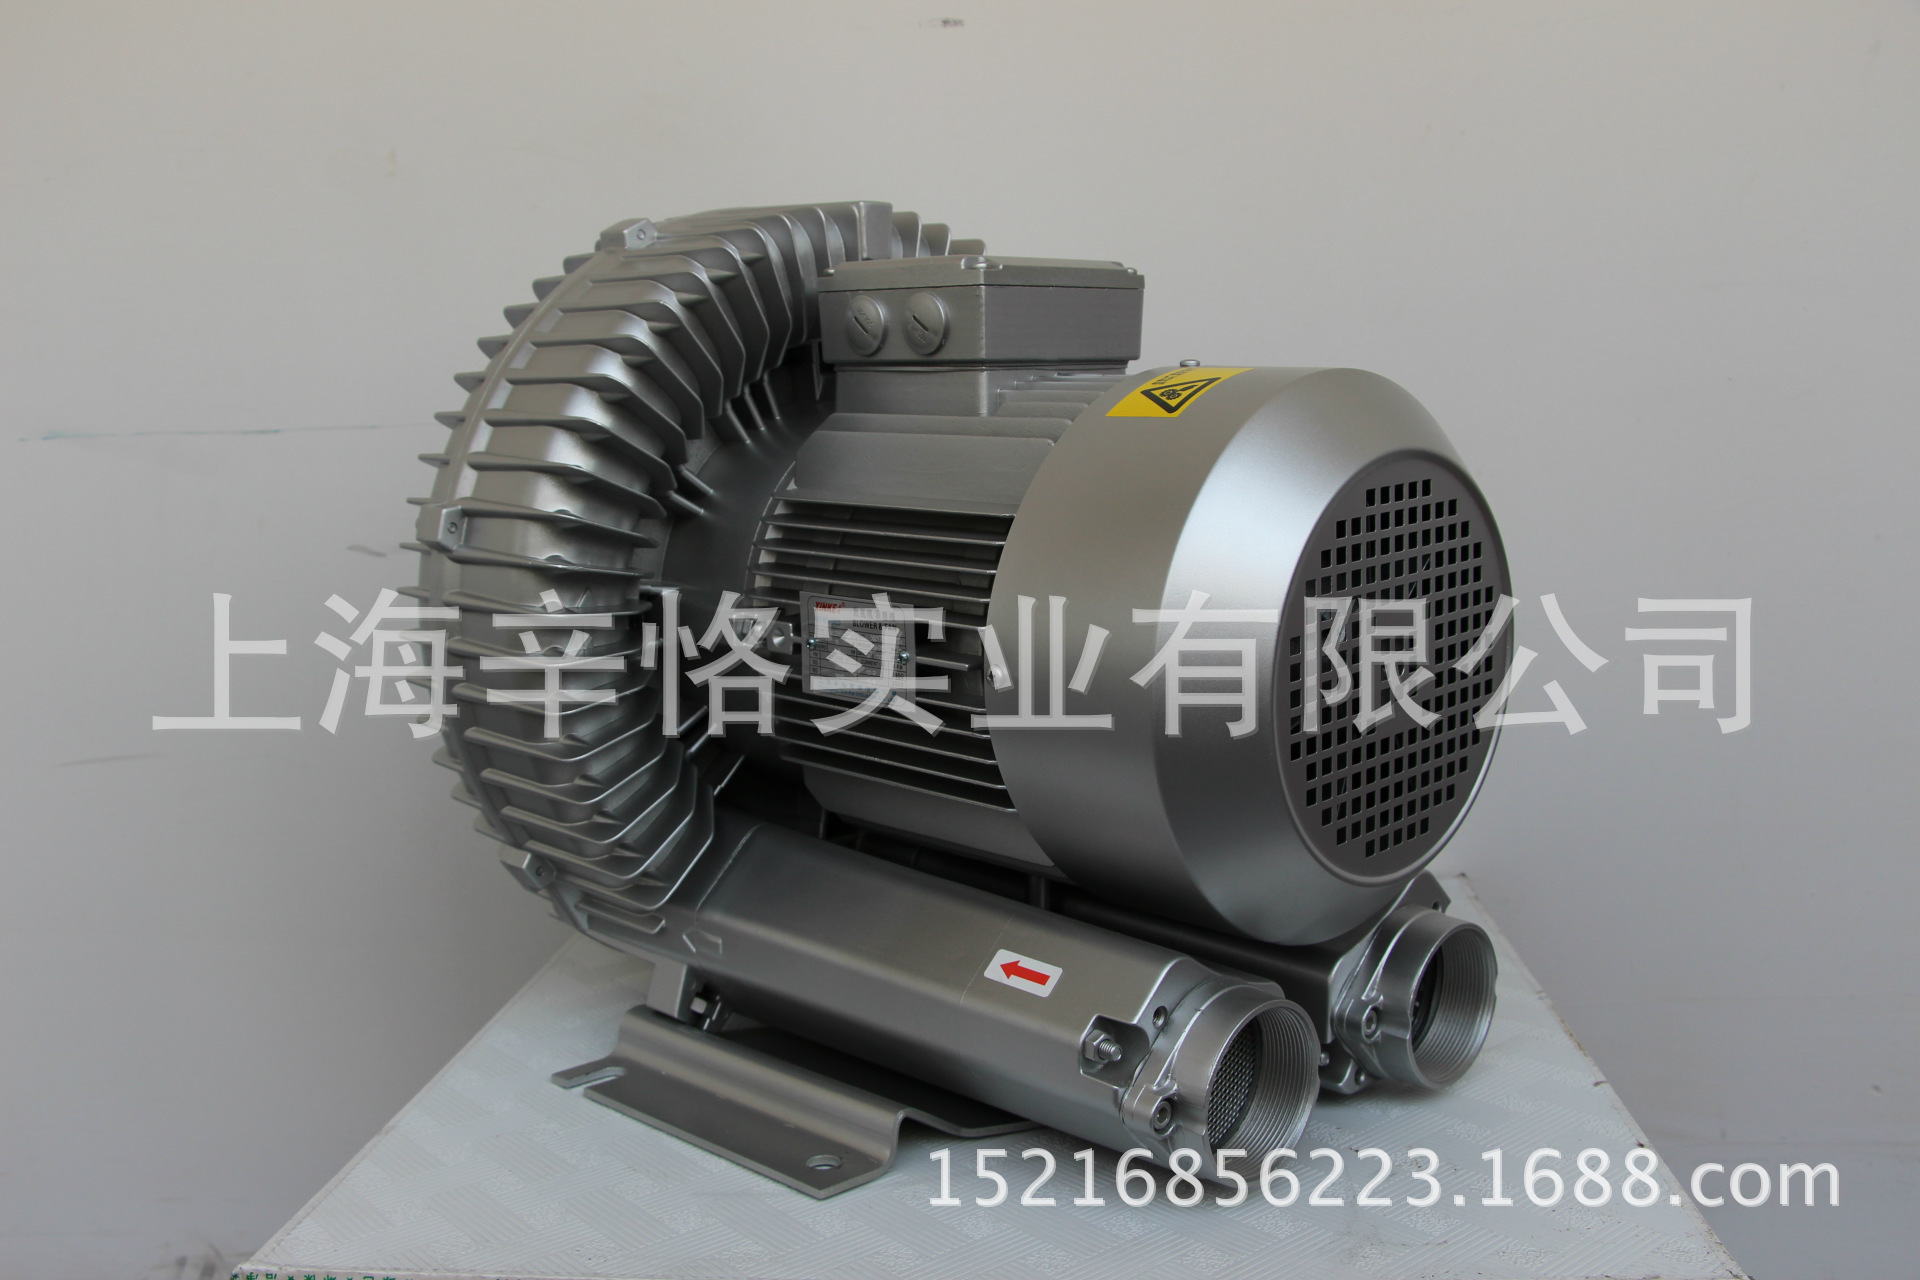 XK38-I2 5.5KW高压风机 漩涡气泵 环形鼓风机 旋涡鼓风机 漩涡鼓风机